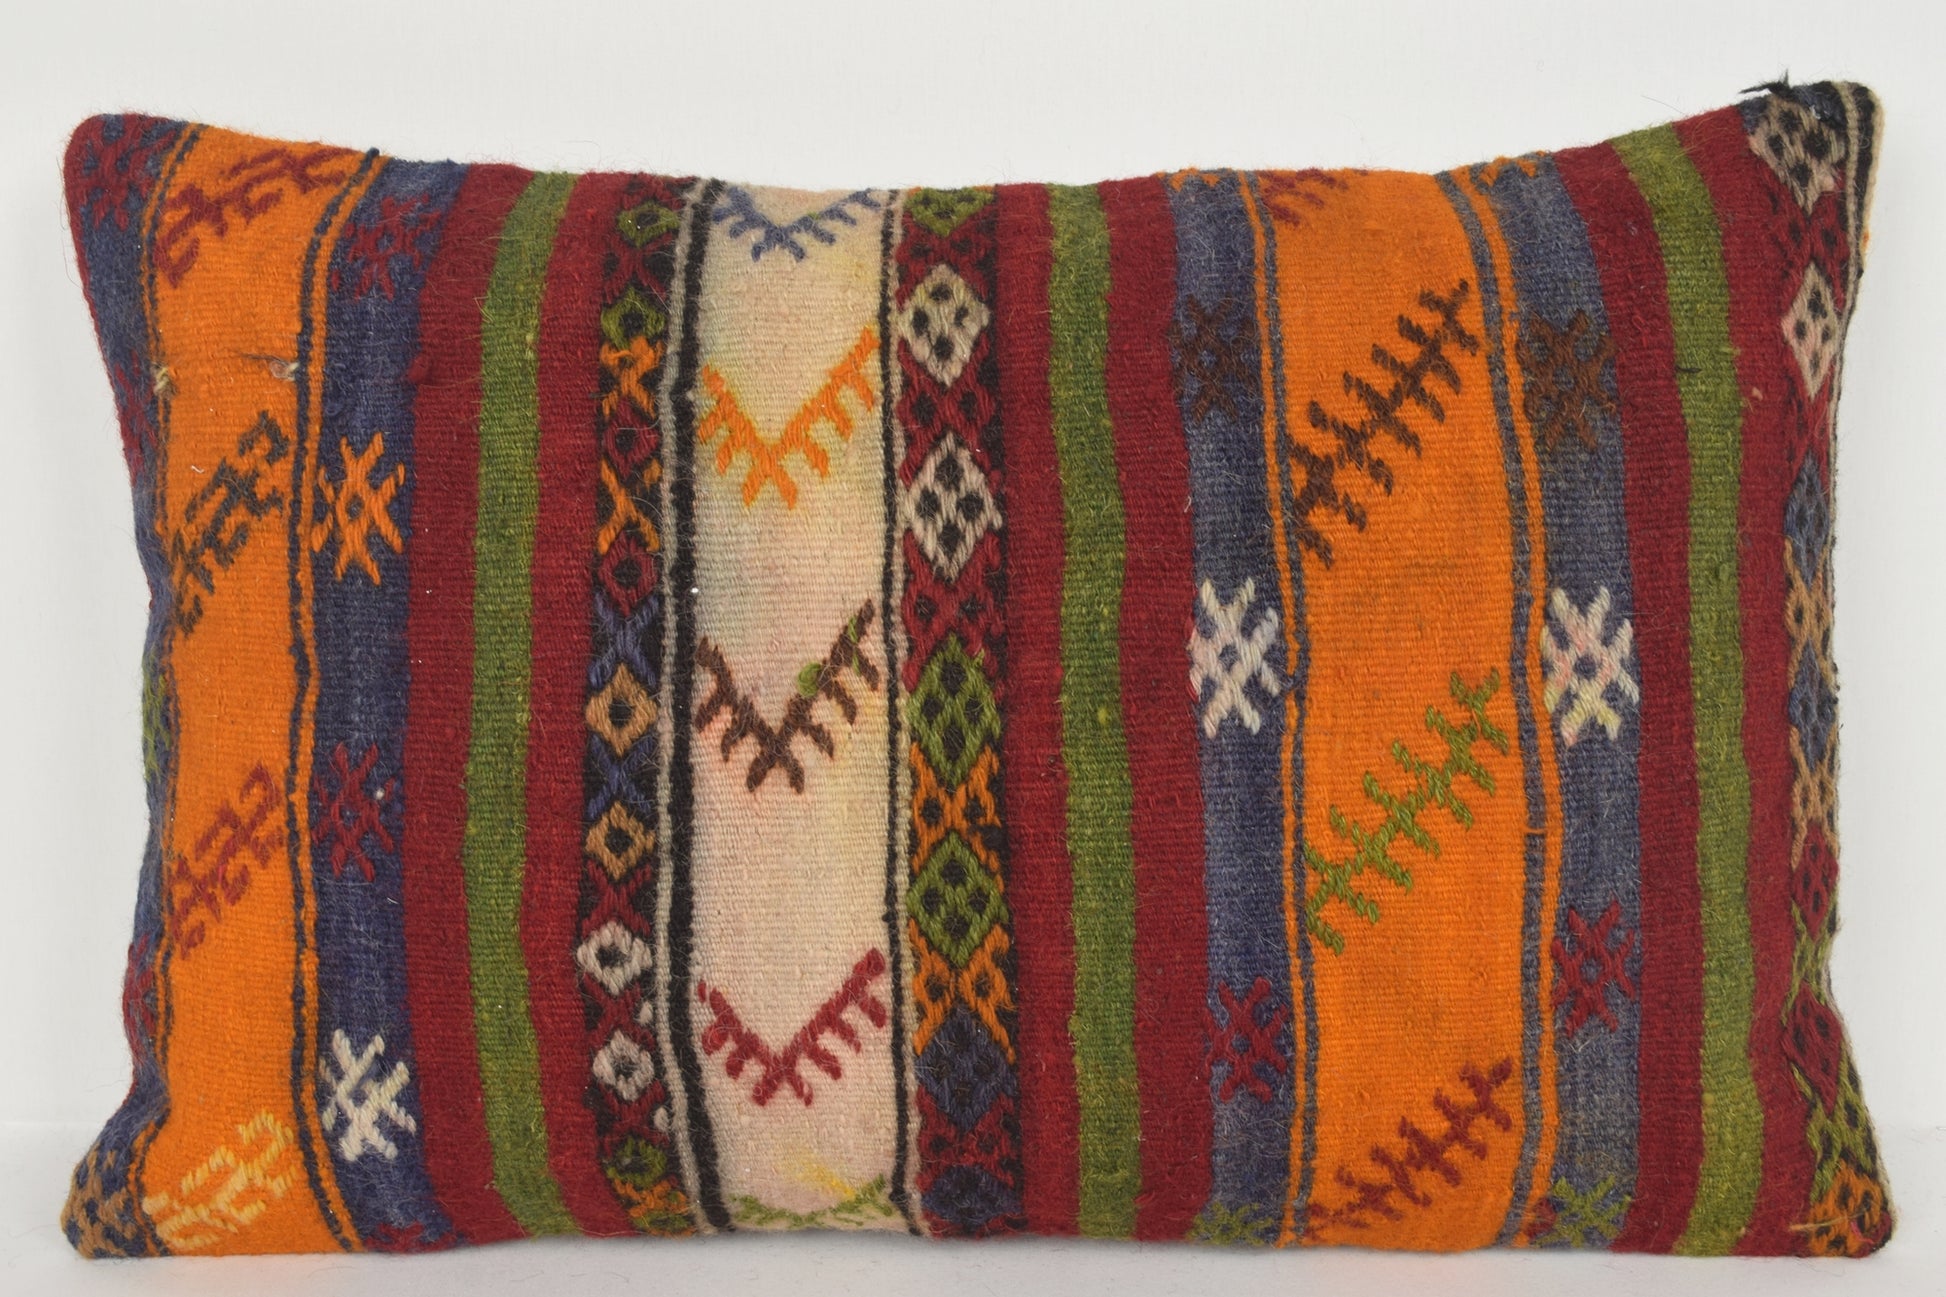 Turkey Cushion Covers 16x24 " 40x60 cm. E00631 Southwestern Print Pillows